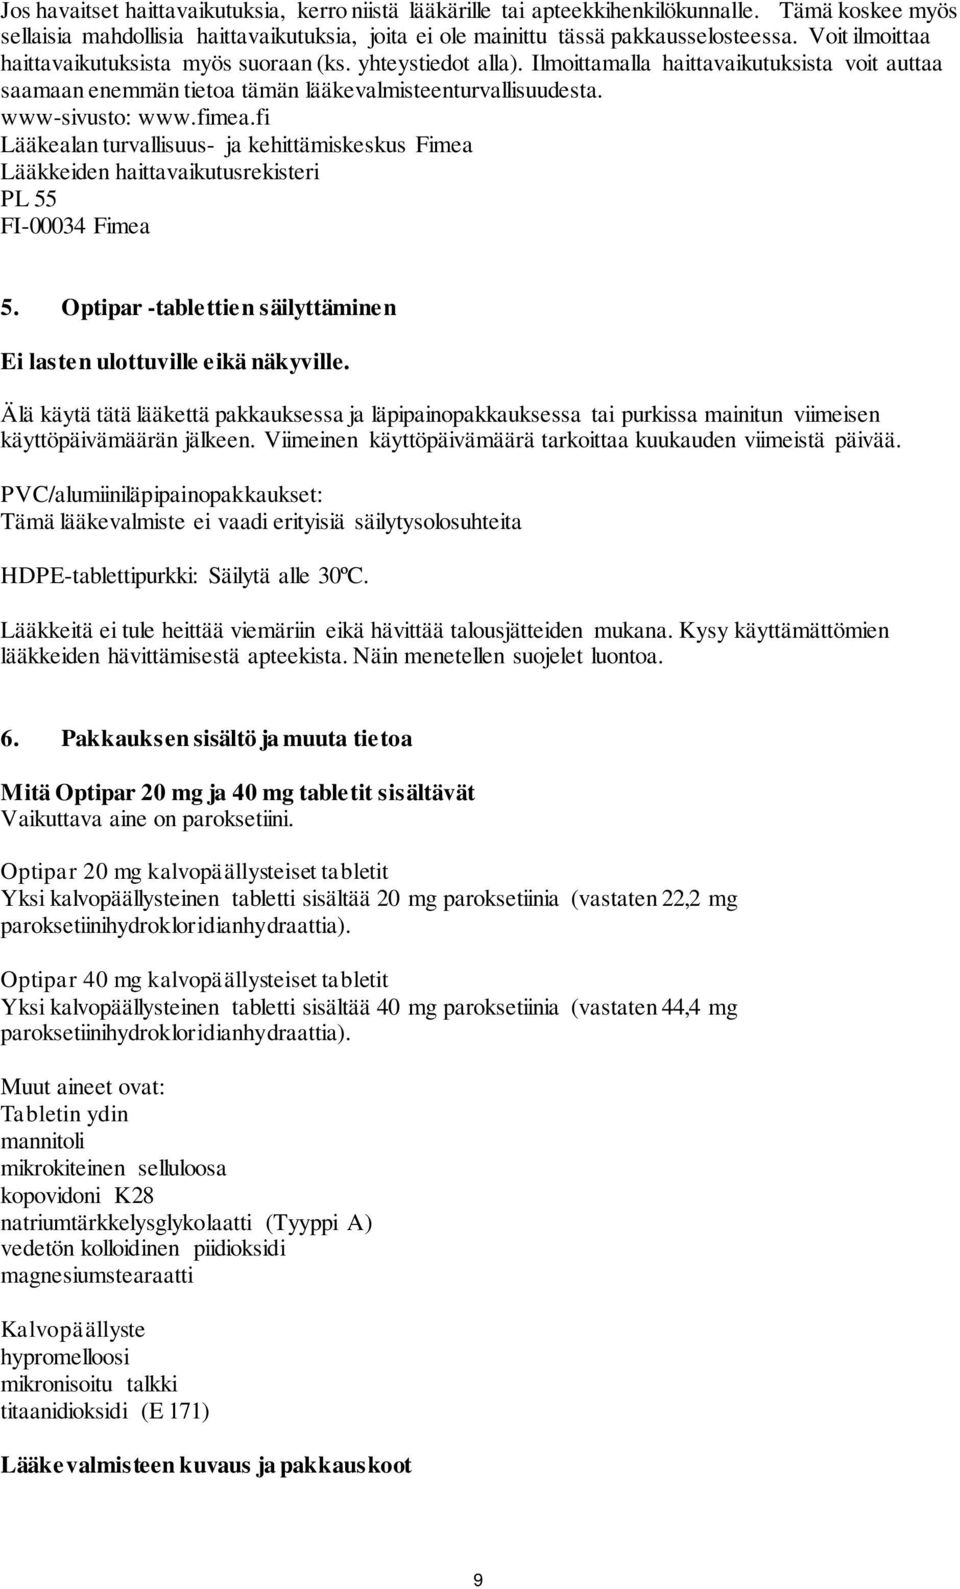 fimea.fi Lääkealan turvallisuus- ja kehittämiskeskus Fimea Lääkkeiden haittavaikutusrekisteri PL 55 FI-00034 Fimea 5. Optipar -tablettien säilyttäminen Ei lasten ulottuville eikä näkyville.